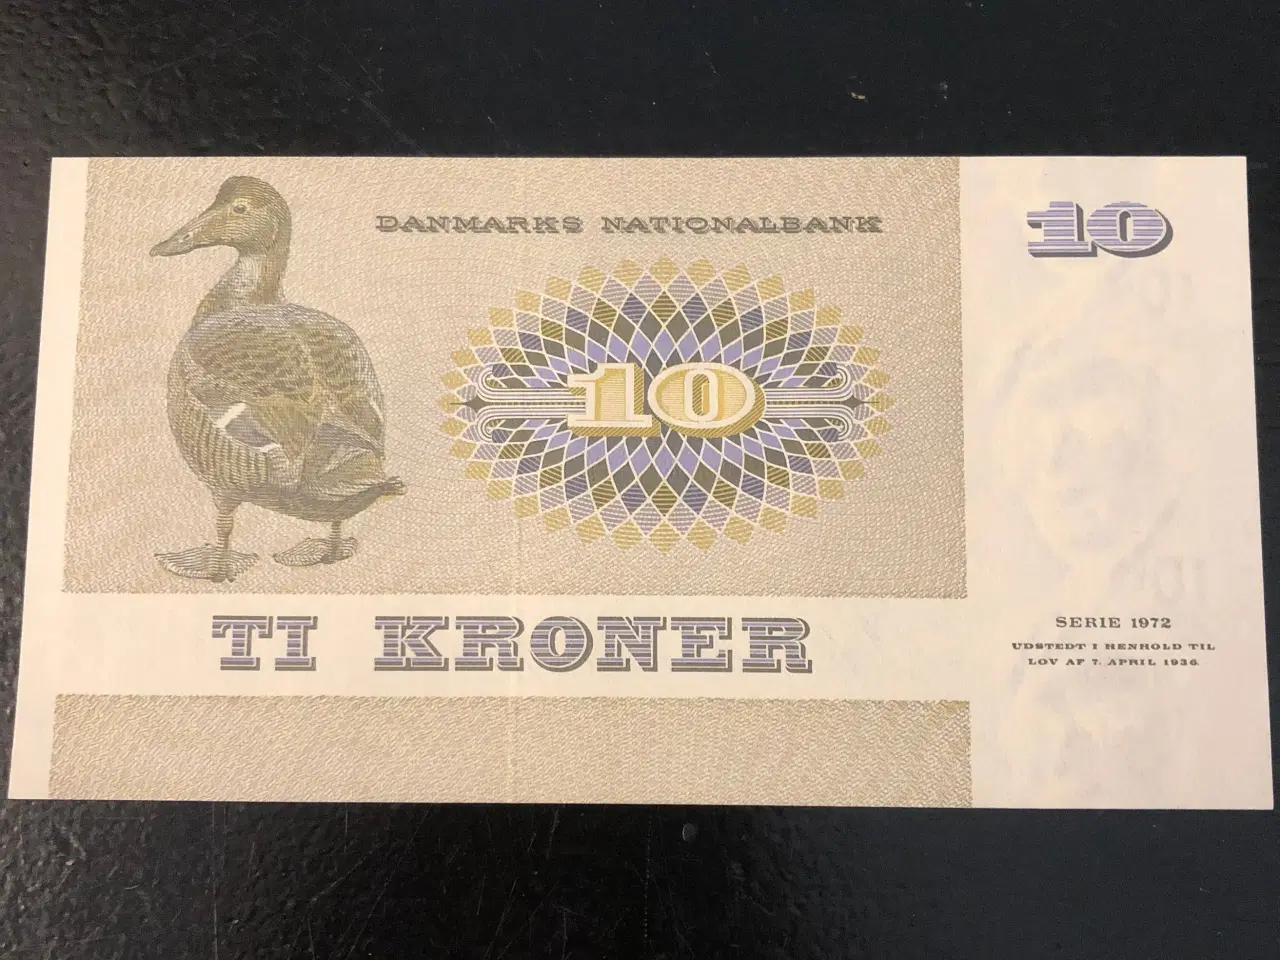 Billede 1 - 10 kroner seddel fra 1972